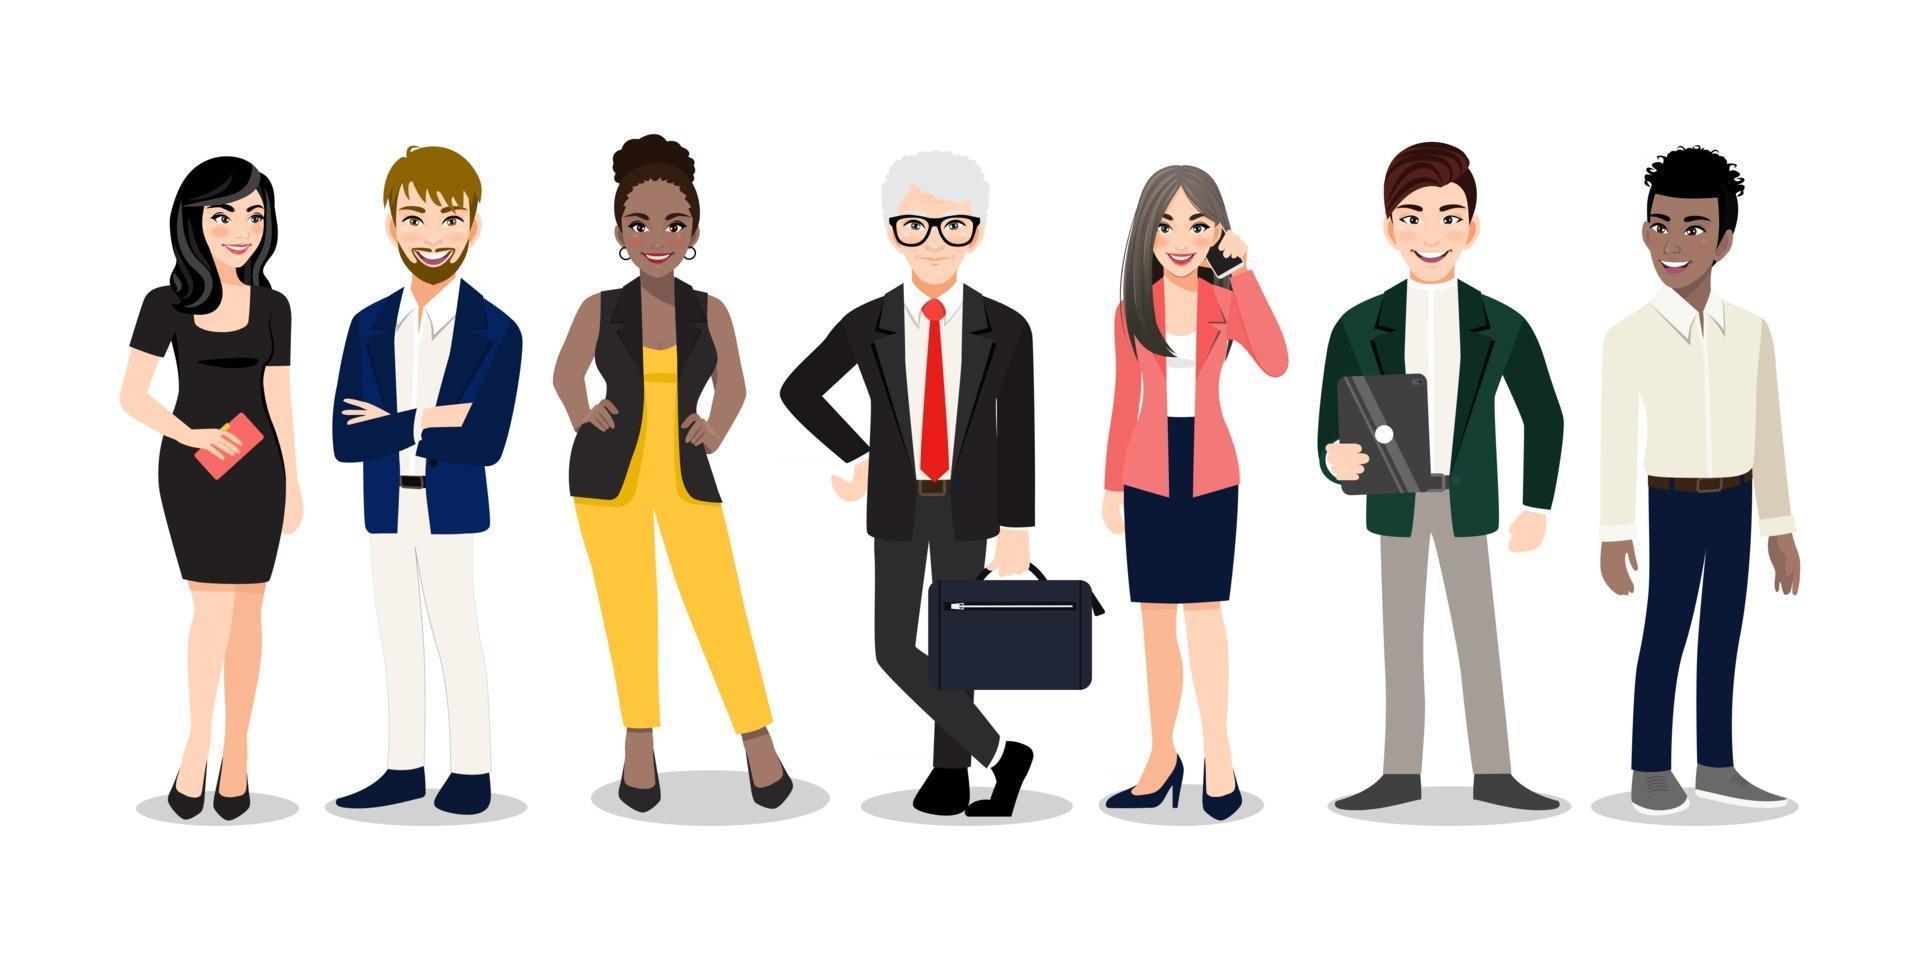 trabajadores de oficina o equipo multinacional de negocios de pie y sonriendo juntos. Ilustración vectorial de diversos dibujos animados de hombres y mujeres de diversas razas, edades y tipo de cuerpo en trajes de oficina. vector